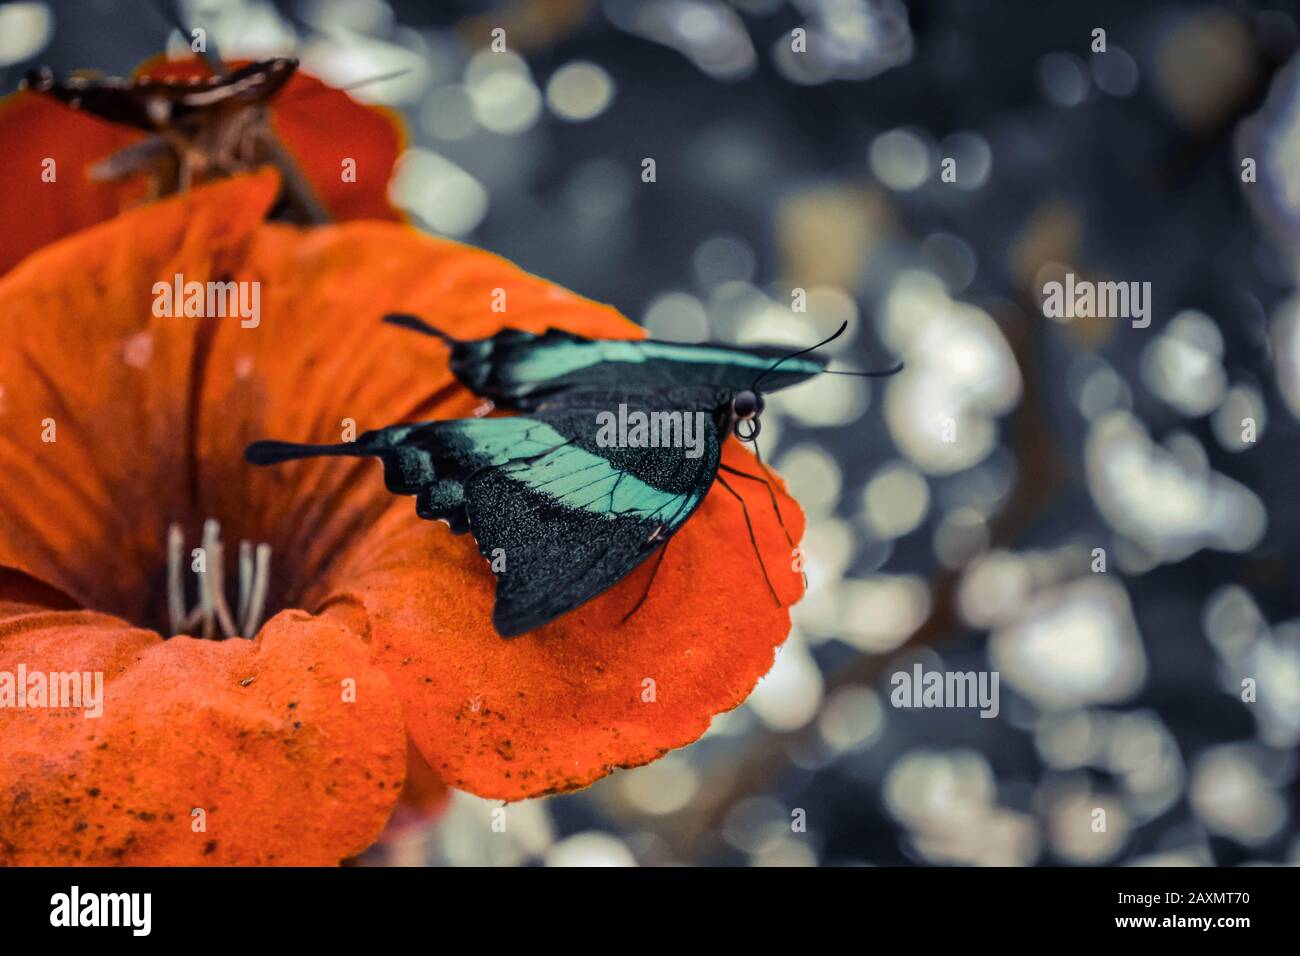 mariposa con alas verdes sentadas en un primer plano de flor roja, filtro Foto de stock